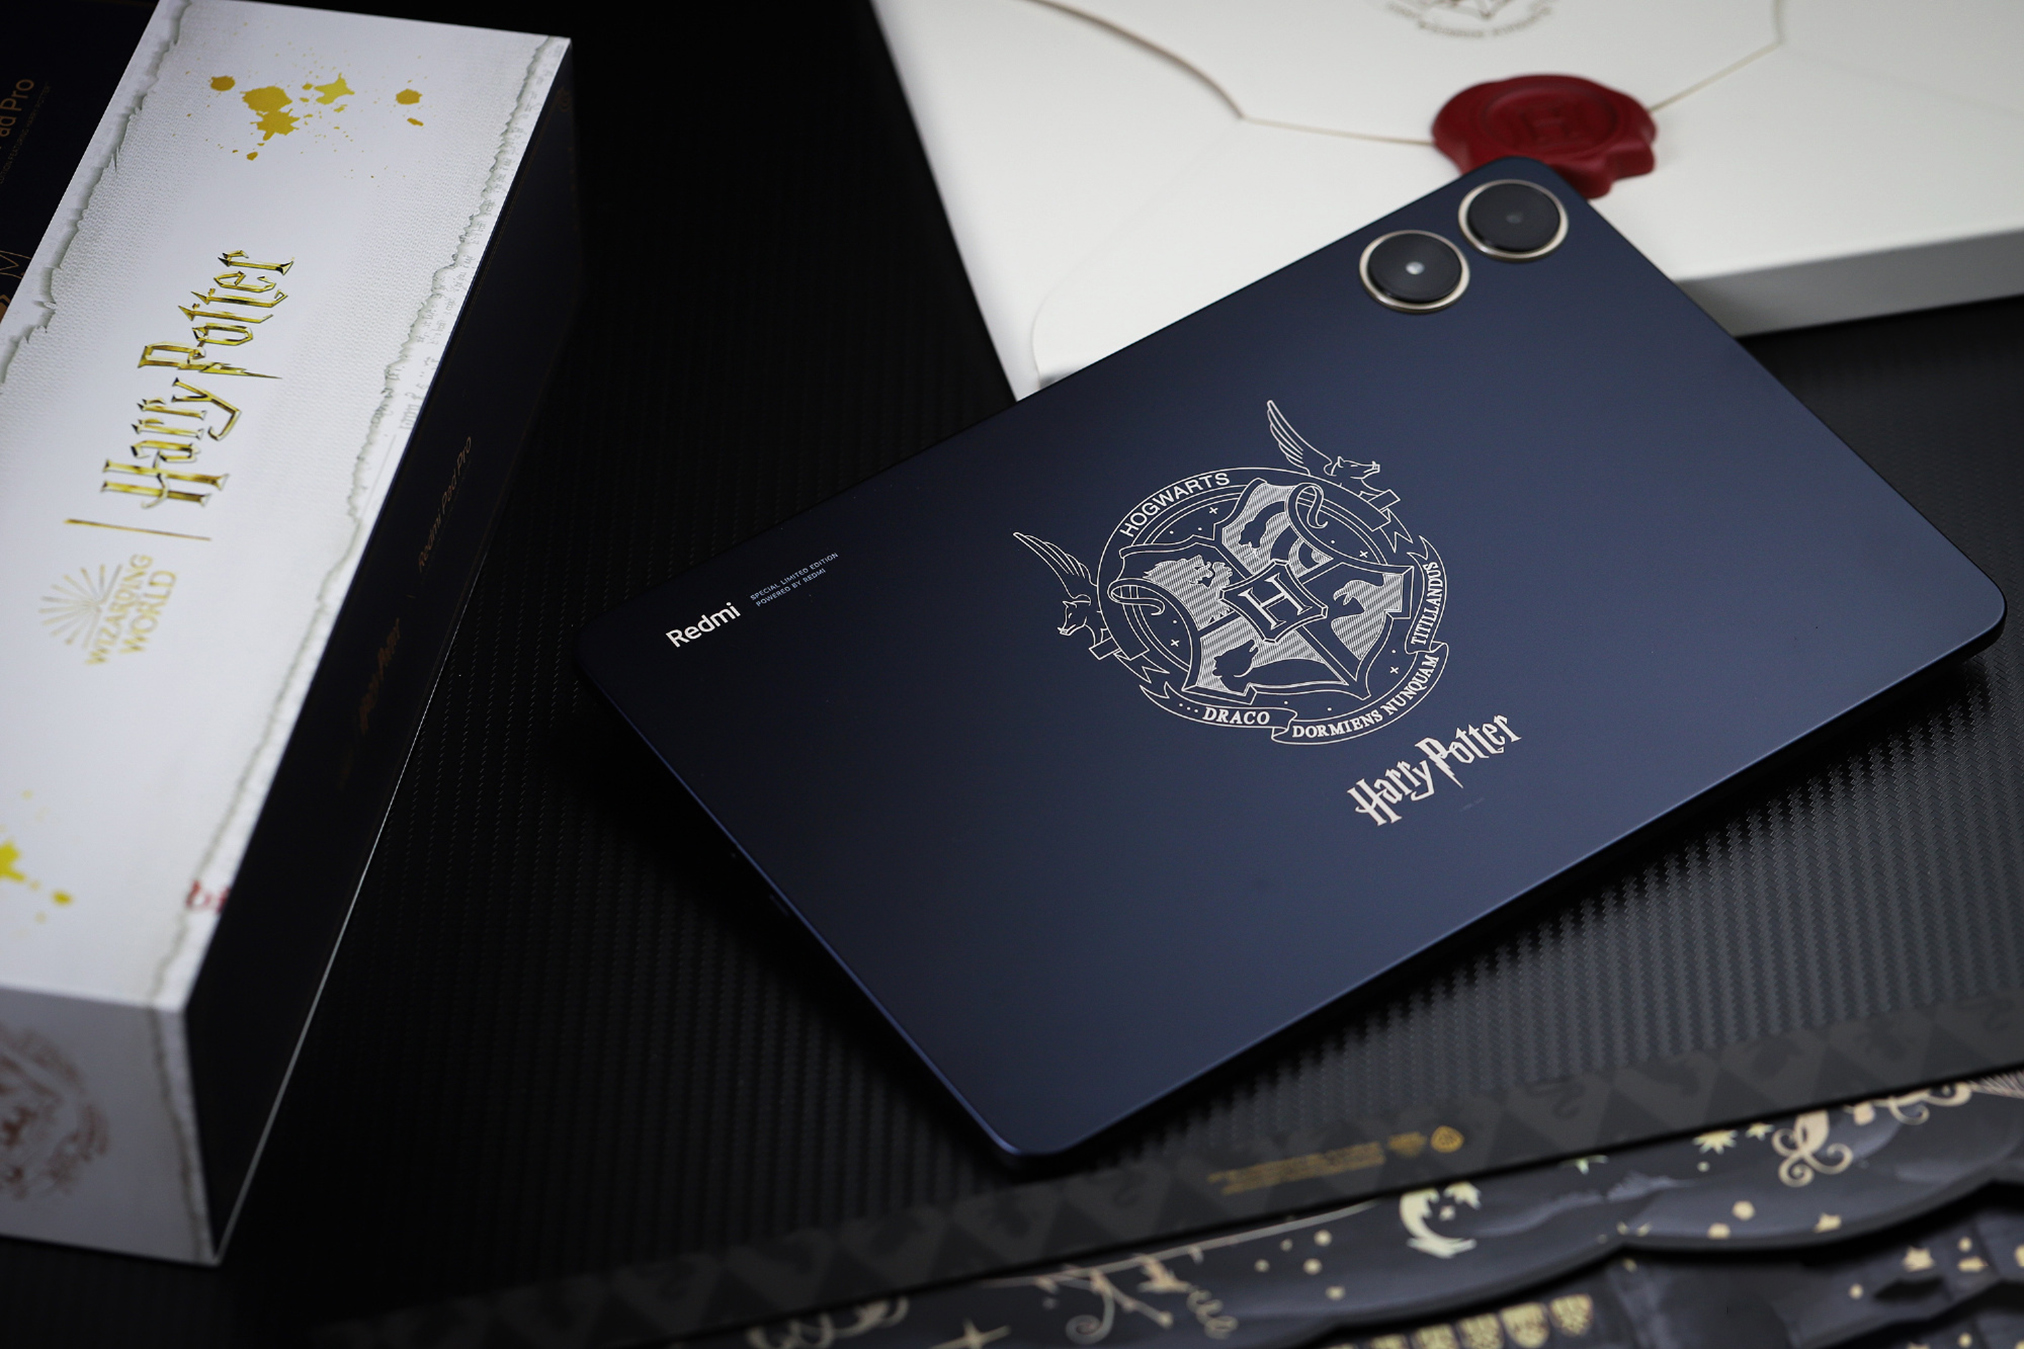 Cận cảnh máy tính bảng 12 inch giá rẻ chỉ 5 triệu đồng của Xiaomi: Thiết kế đẹp như iPad, có cả bản Harry Potter đặc biệt cho các Potterheads, pin khủng 10.000mAh- Ảnh 21.